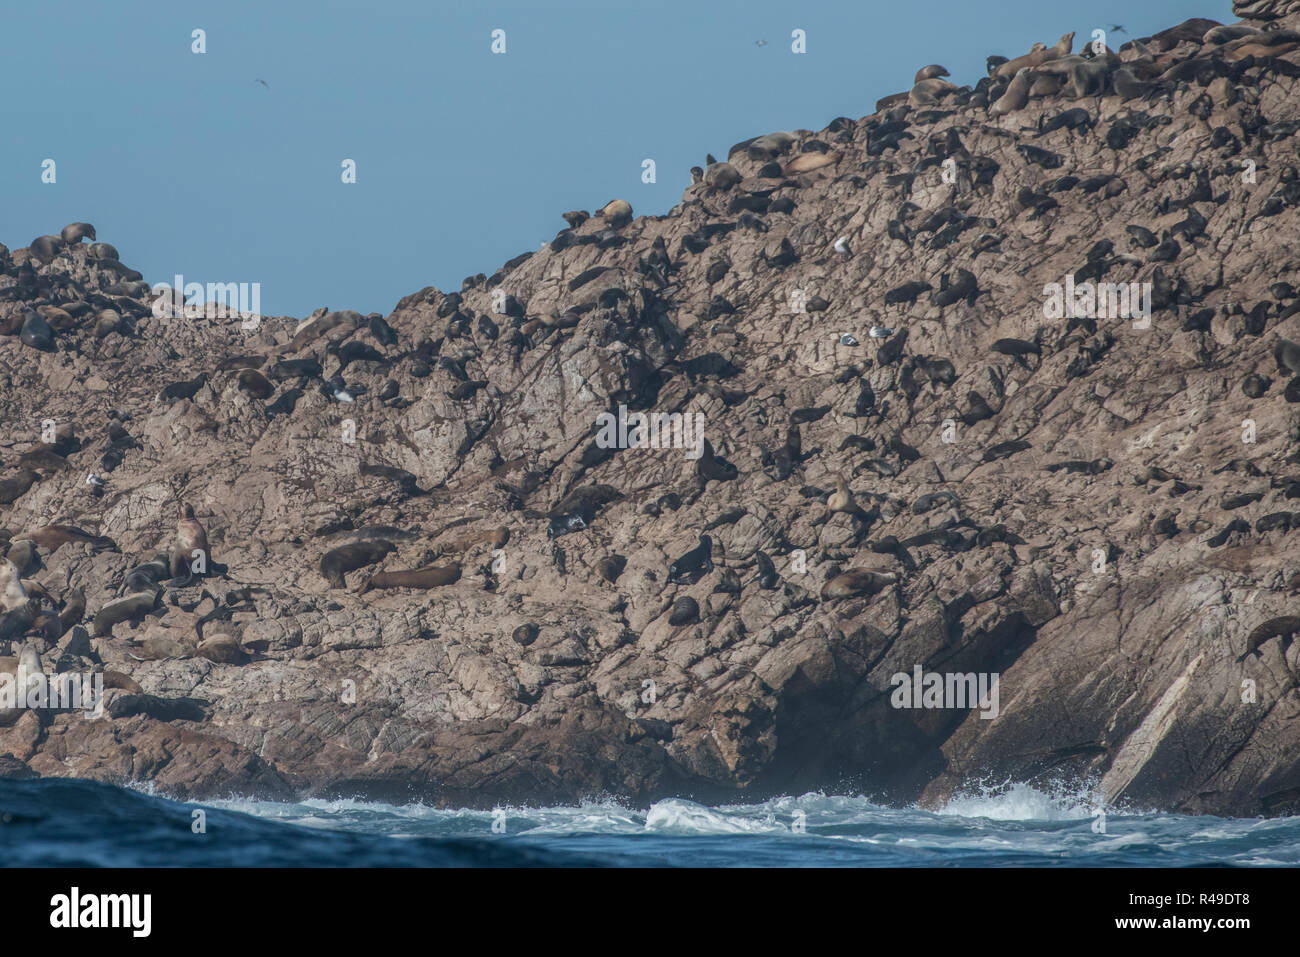 Une colonie de lions de mer sur l'île de Farallon. Banque D'Images